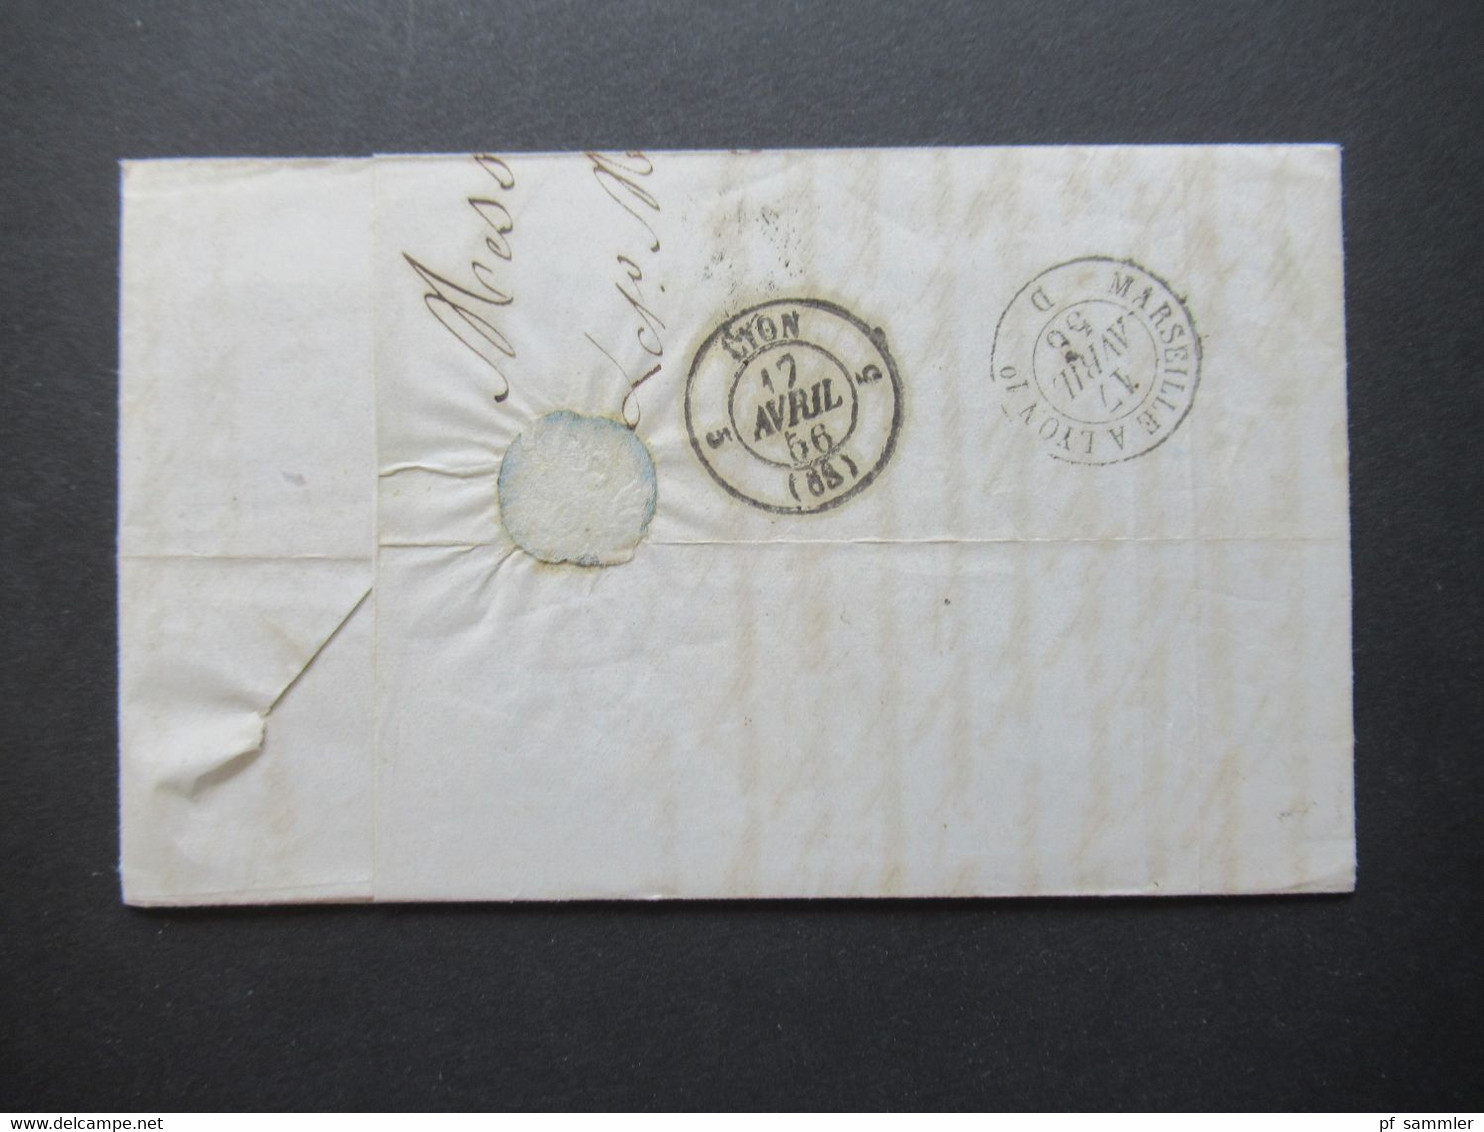 Italien 1856 Faltbrief Mit Inhalt/ Auslandsbrief Messina - Lione Schiffspost?! Handschriftlicher Vermerk Vapore Francese - Sicily